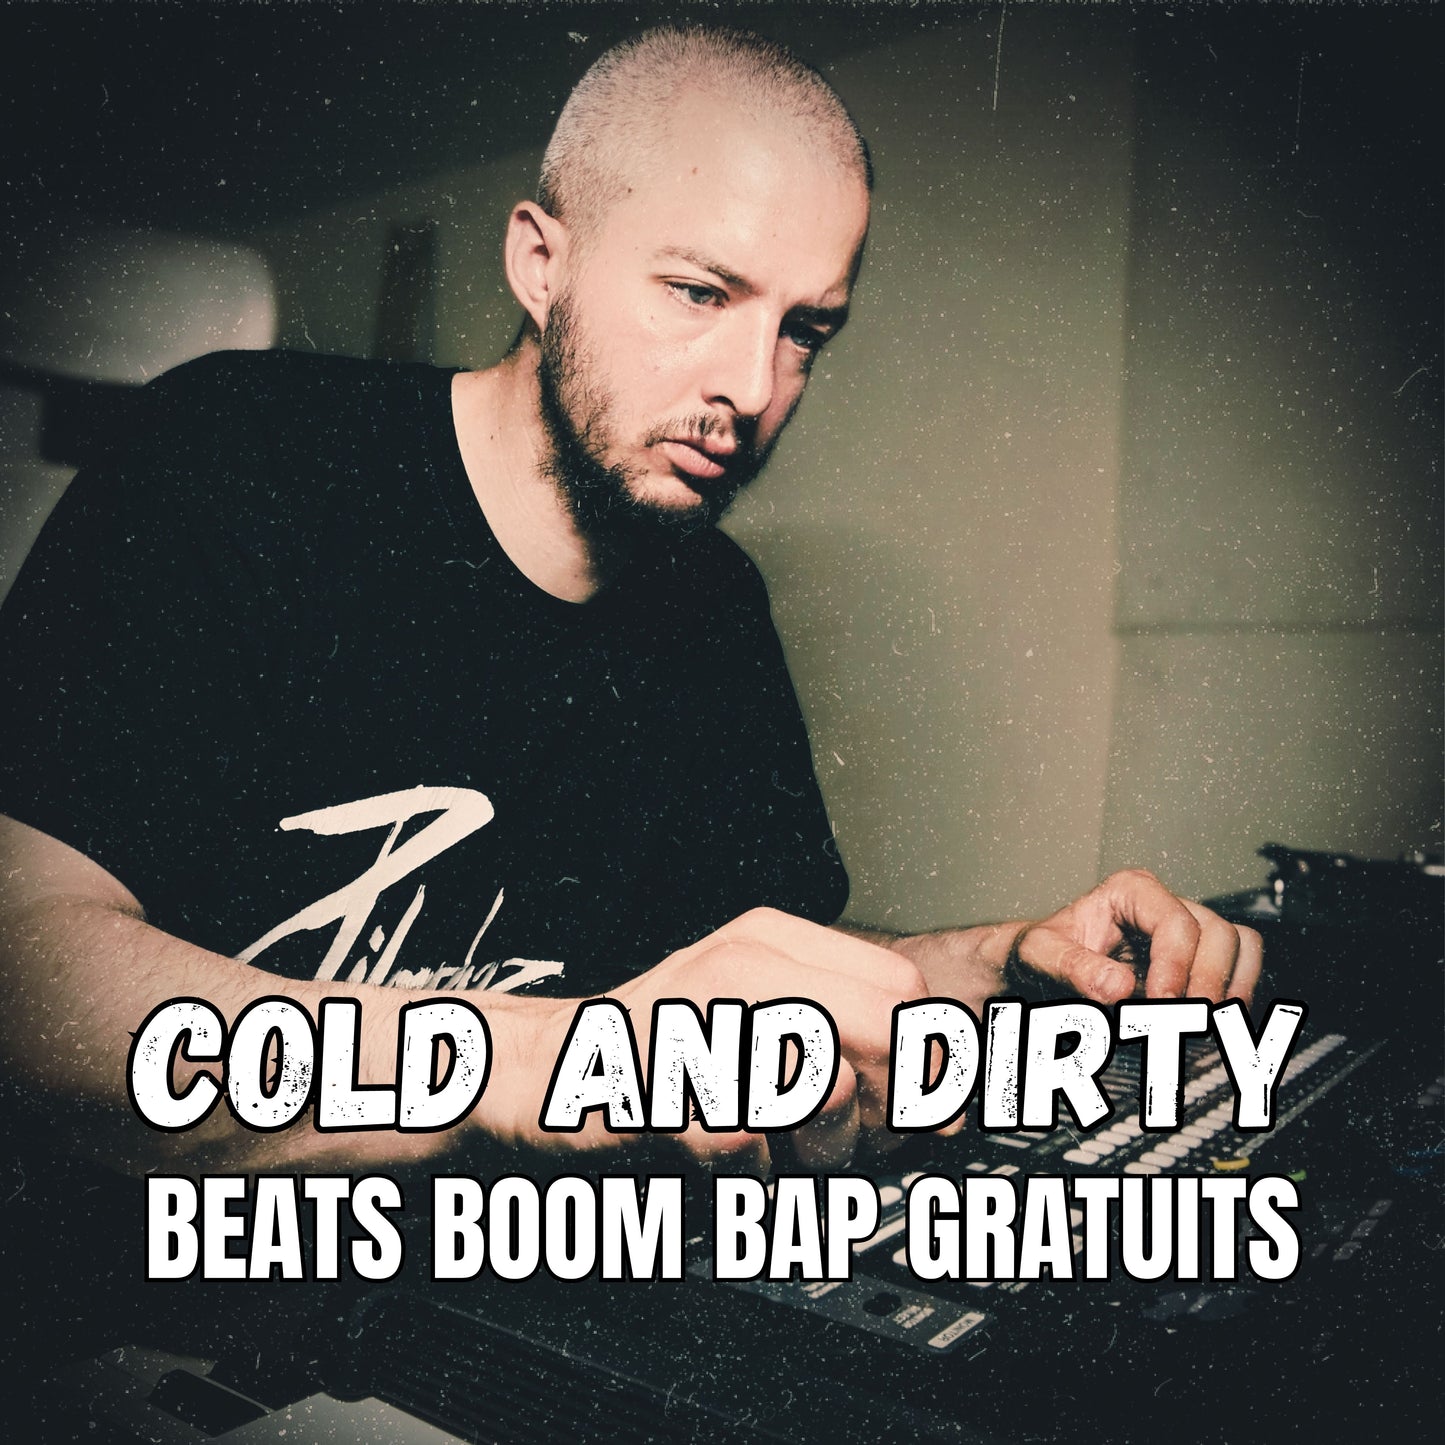 Découvrez le beat Boom Bap gratuit du beatmaker Hip Hop Nizuk, Cold and Dirty !